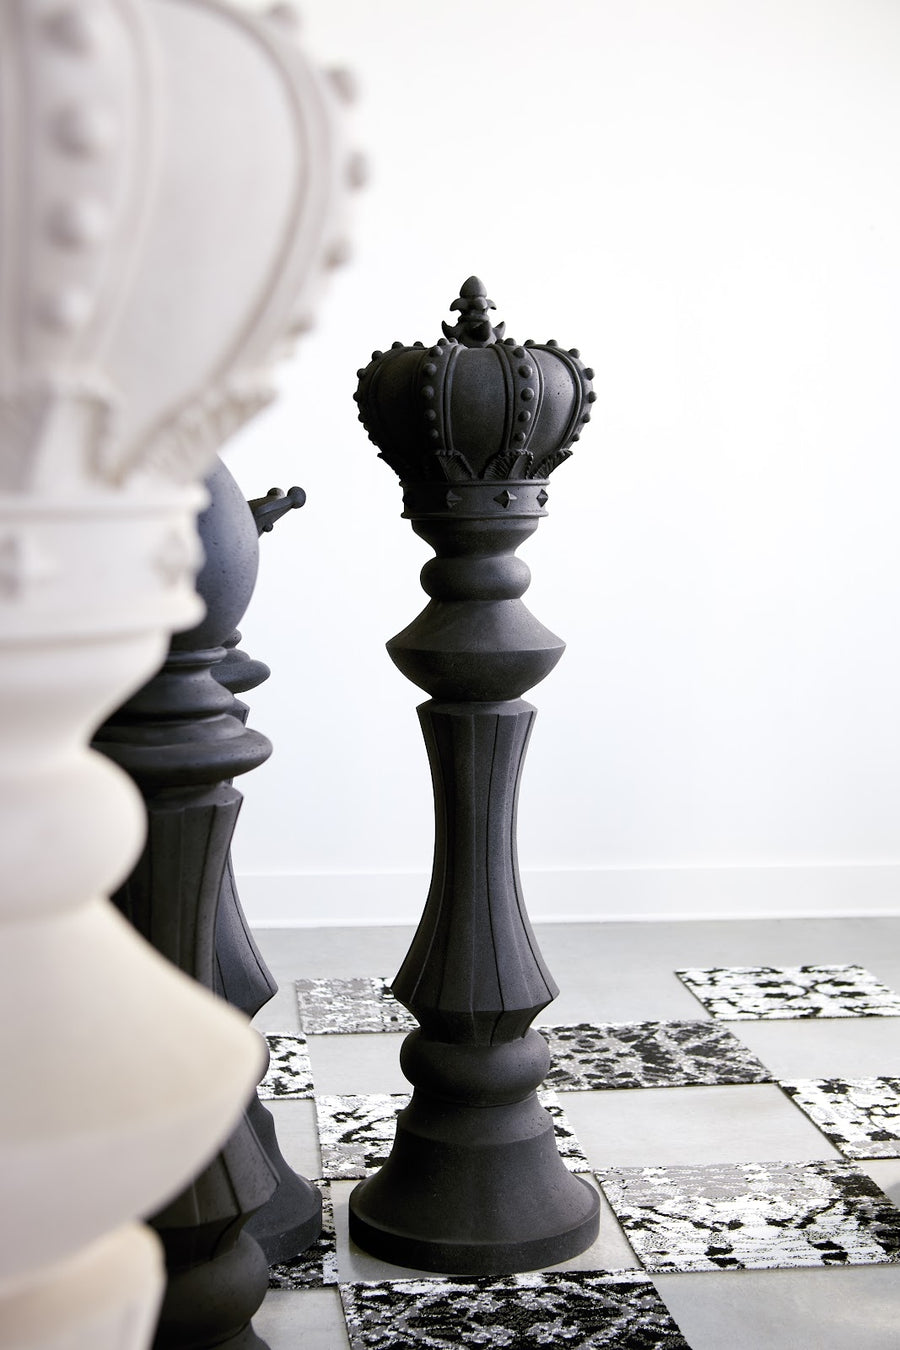 Bishop Chess Sculpture Cast Stone Black